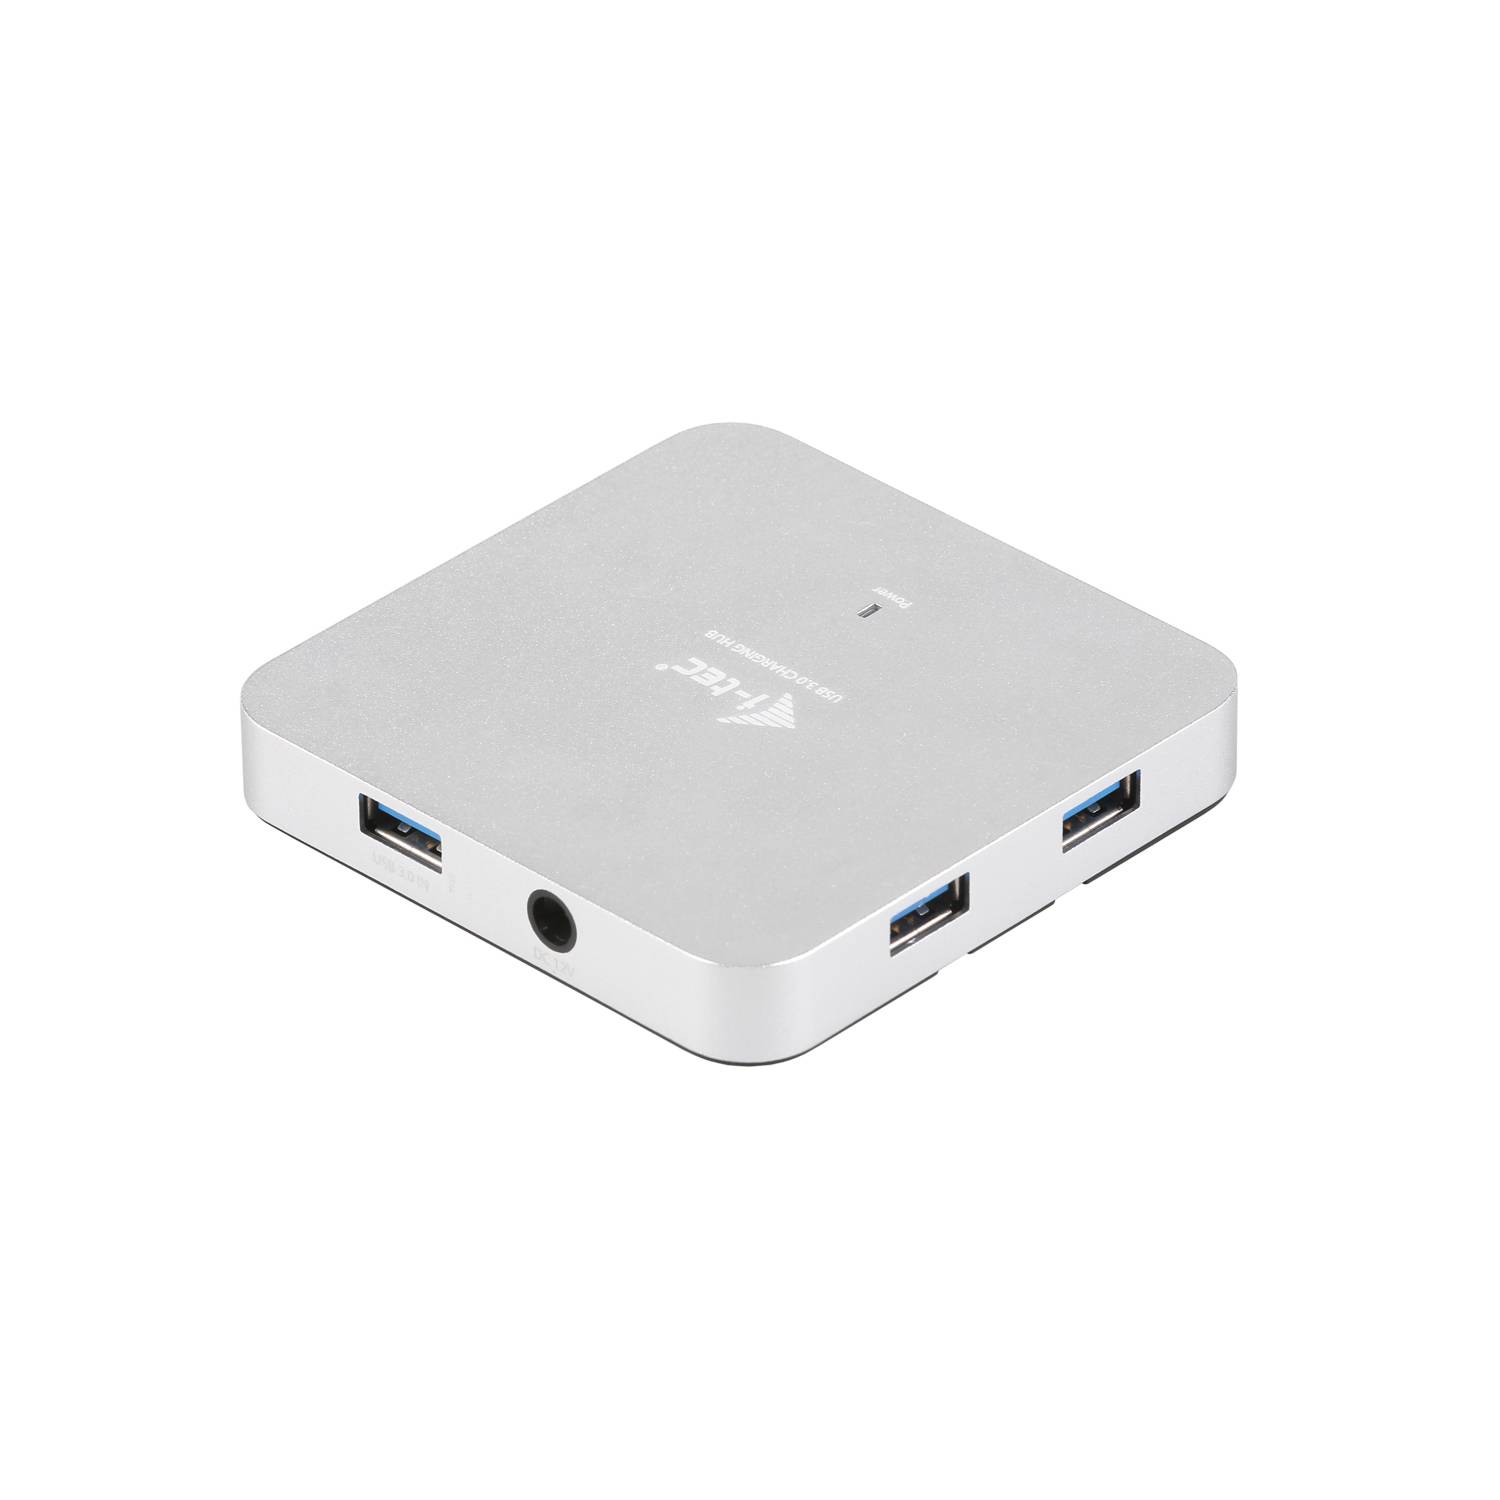 Rca Informatique - image du produit : I-TEC METAL ACTIVE HUB 4 PORT USB 3.0 WITH PS WIN MAC OS